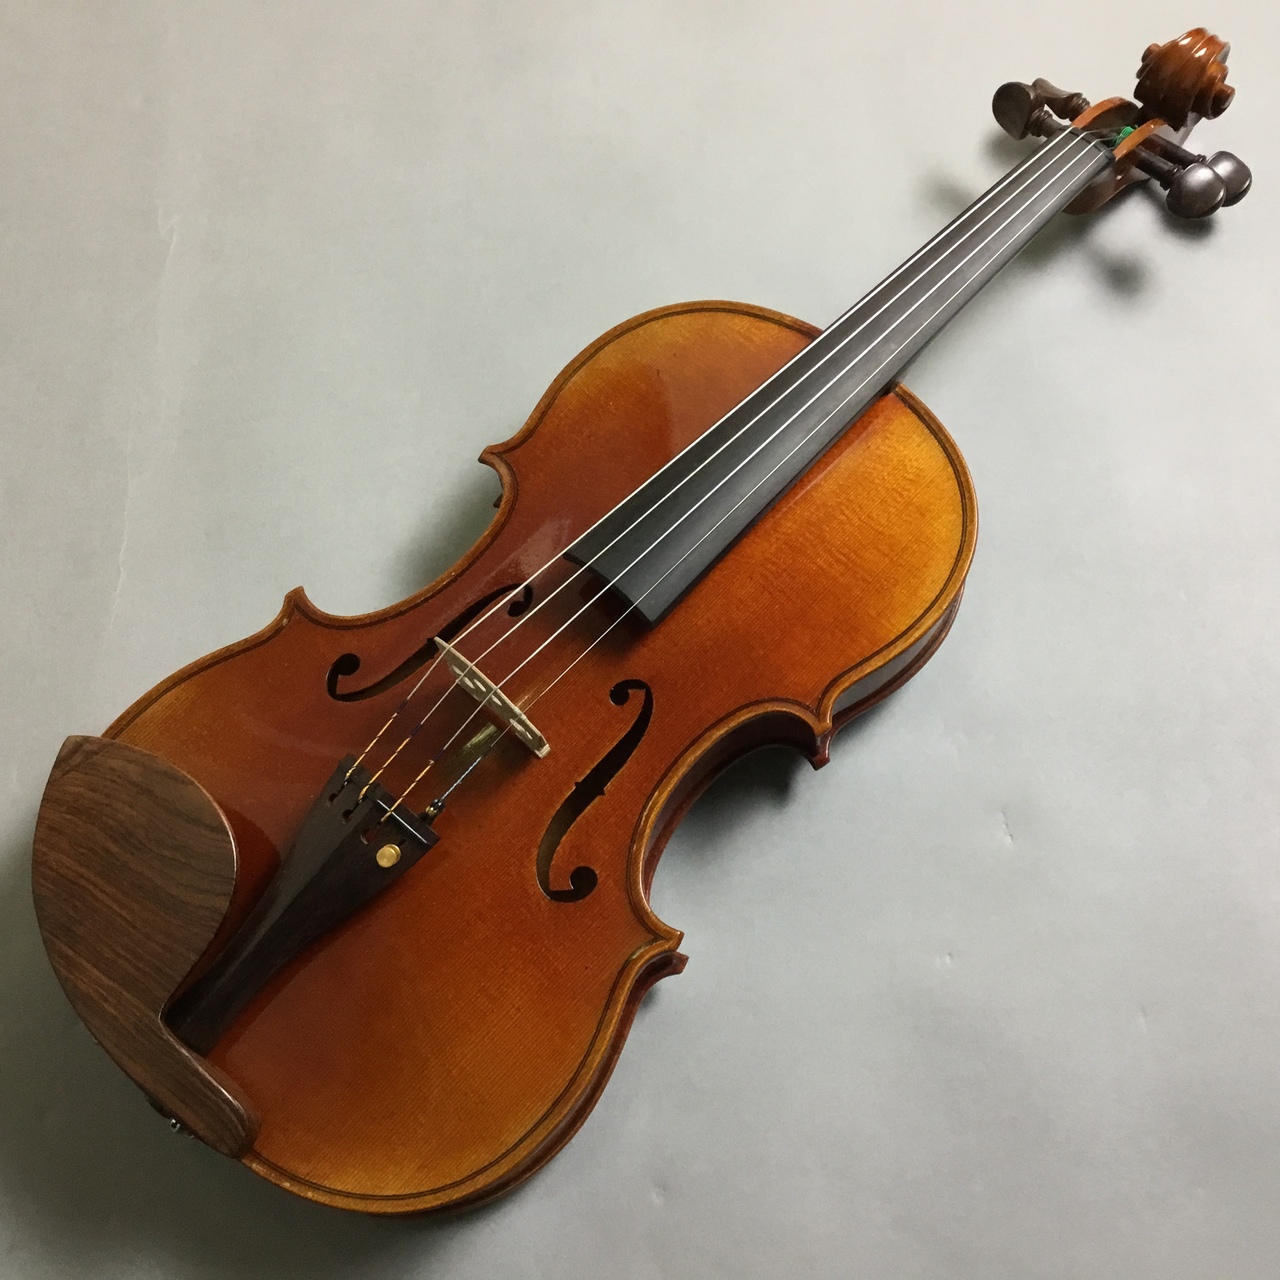 MaZhibin工房 最上位モデル ガルネリモデル バイオリン 4/4 - 楽器、器材